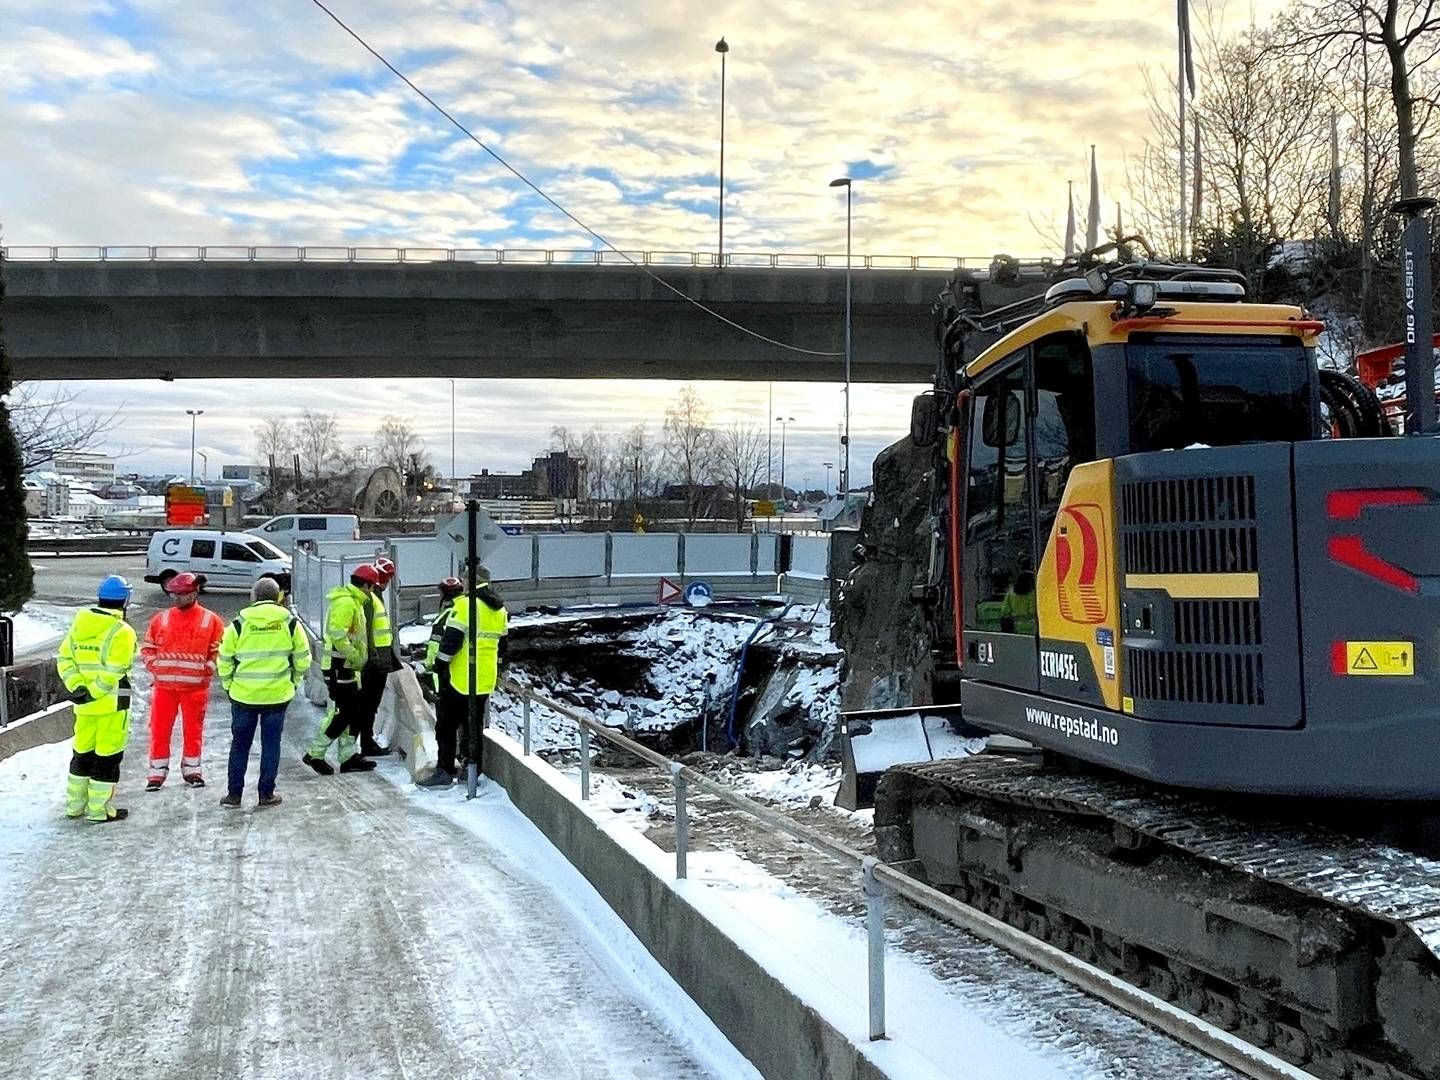 NY VEI: Statens vegvesen setter at 3-4 uker for å bygge en midlertidig vei som skal brukes i to timer. | Foto: Samir Kolukcija/Statens vegvesen